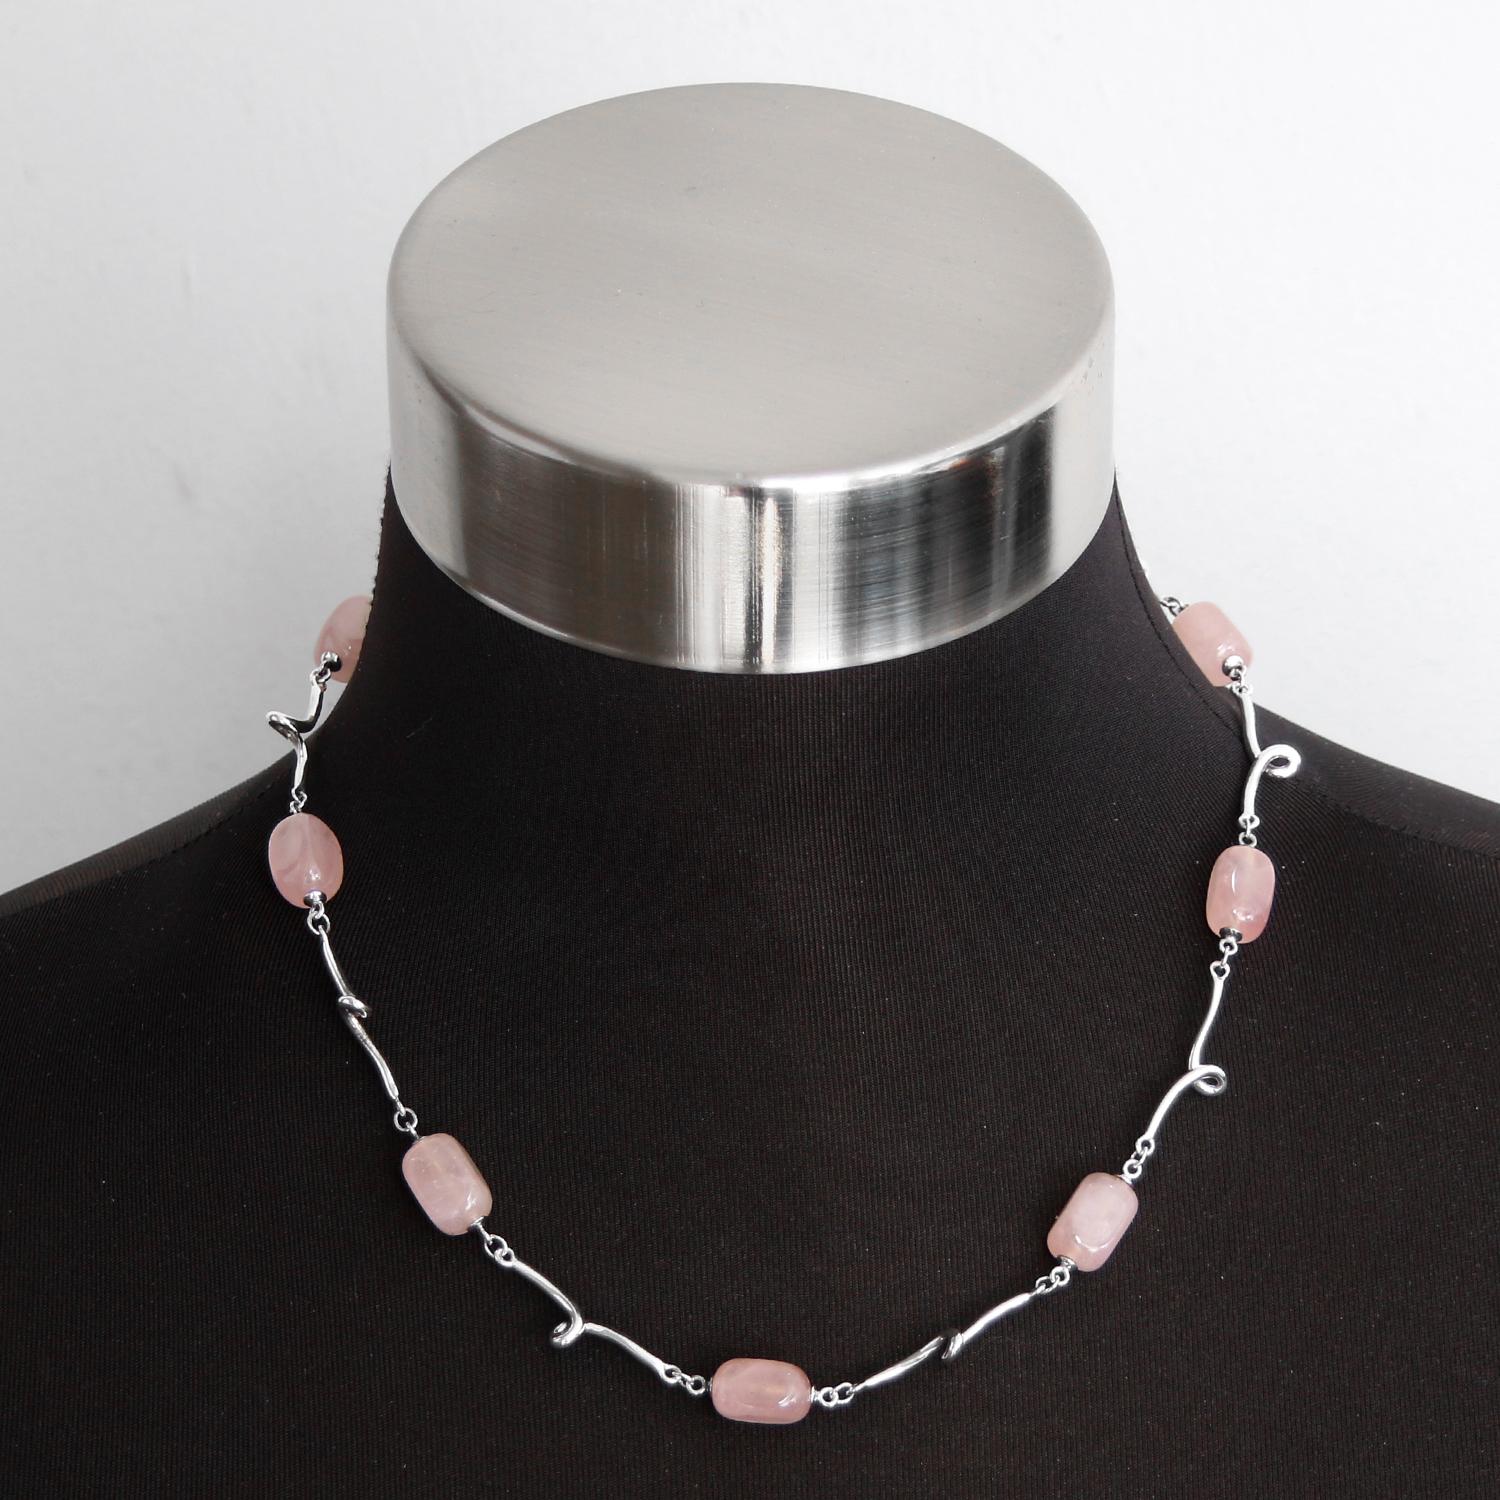 Tiffany & Co. Collier à maillons en argent sterling avec quartz rose - Neuf pierres de quartz rose sur un collier de 18 pouces. Argent sterling. Poinçons : 925, signature du designer. D'occasion avec la pochette Tiffany.